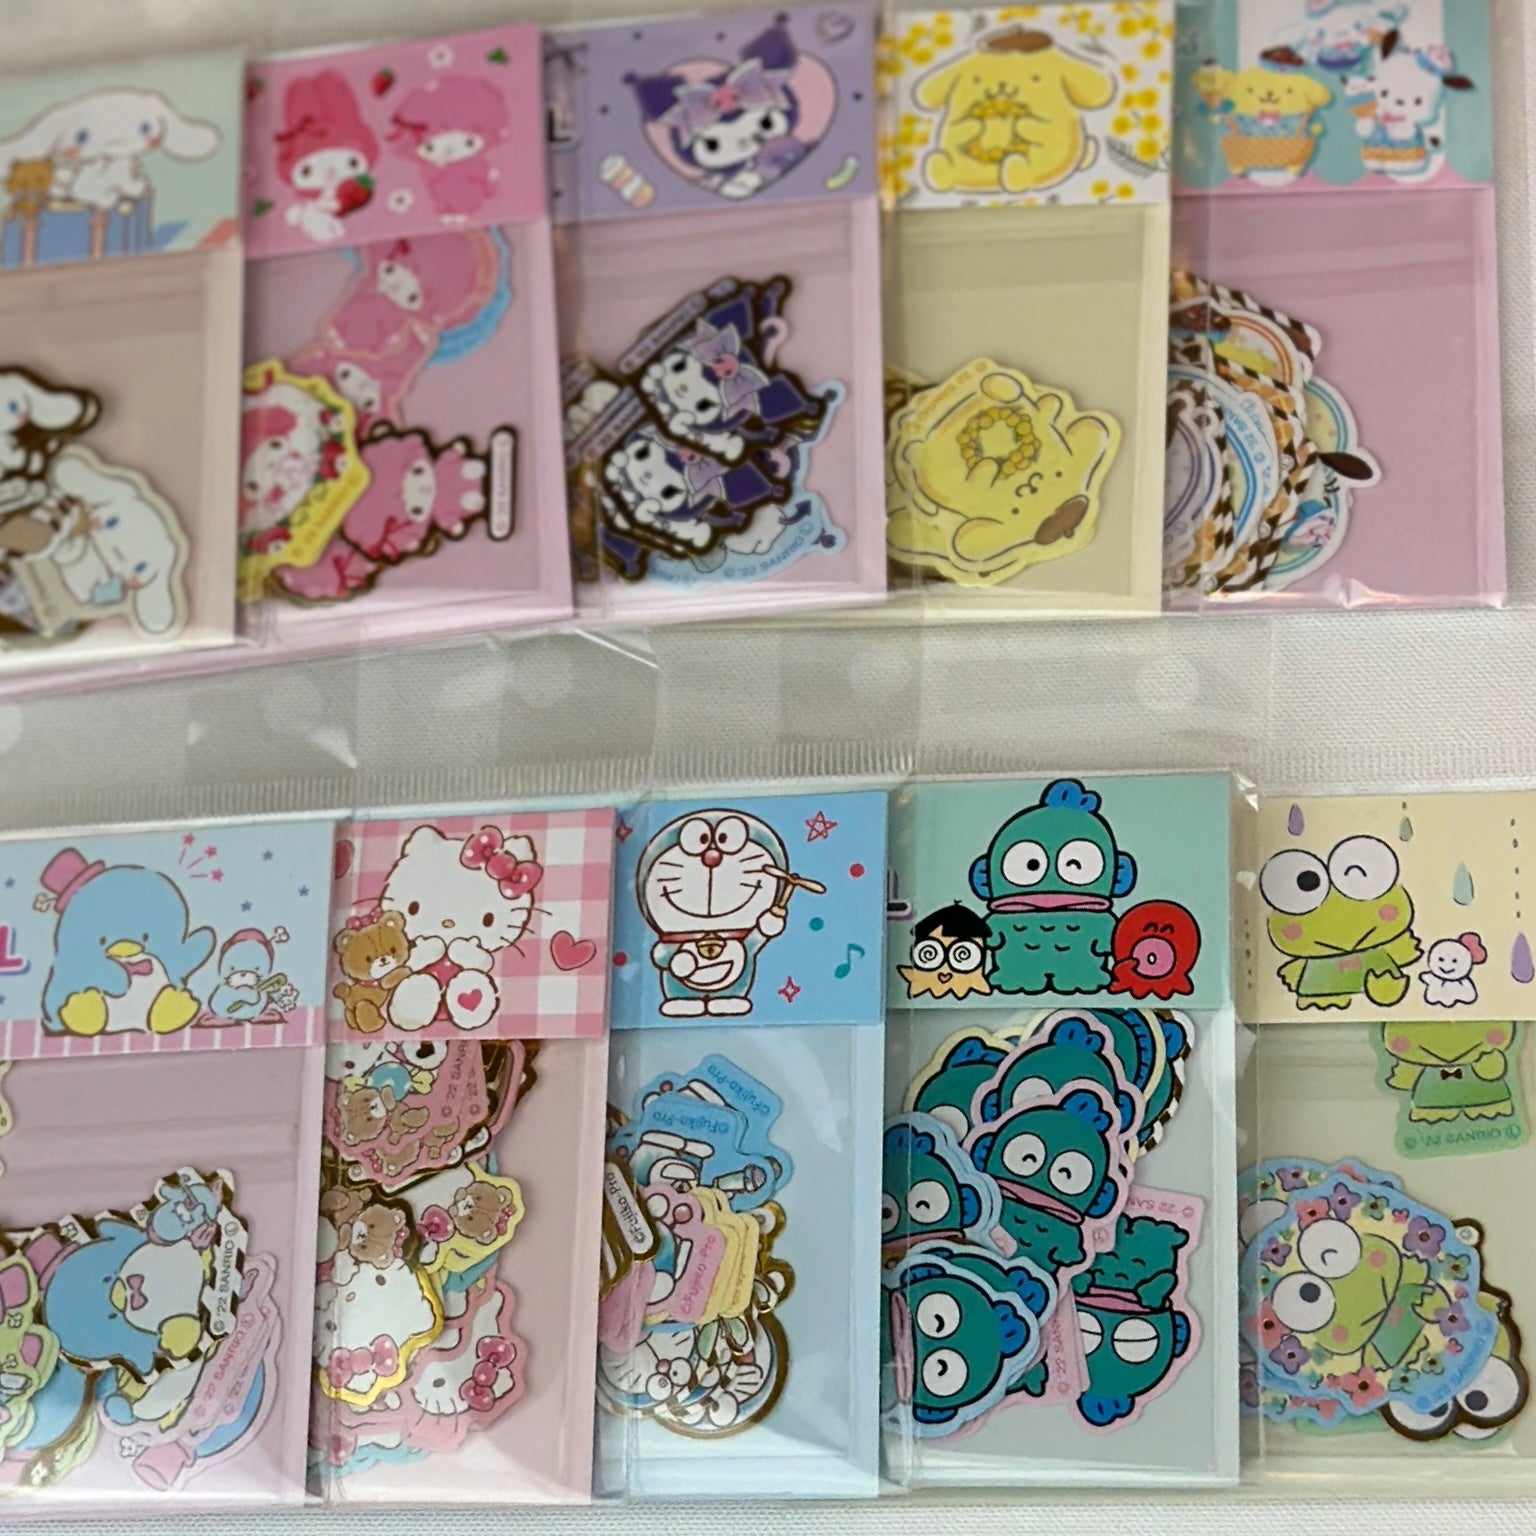 Japan Sanrio Die-cut Flake Seal Sticker Pack - Kuromi